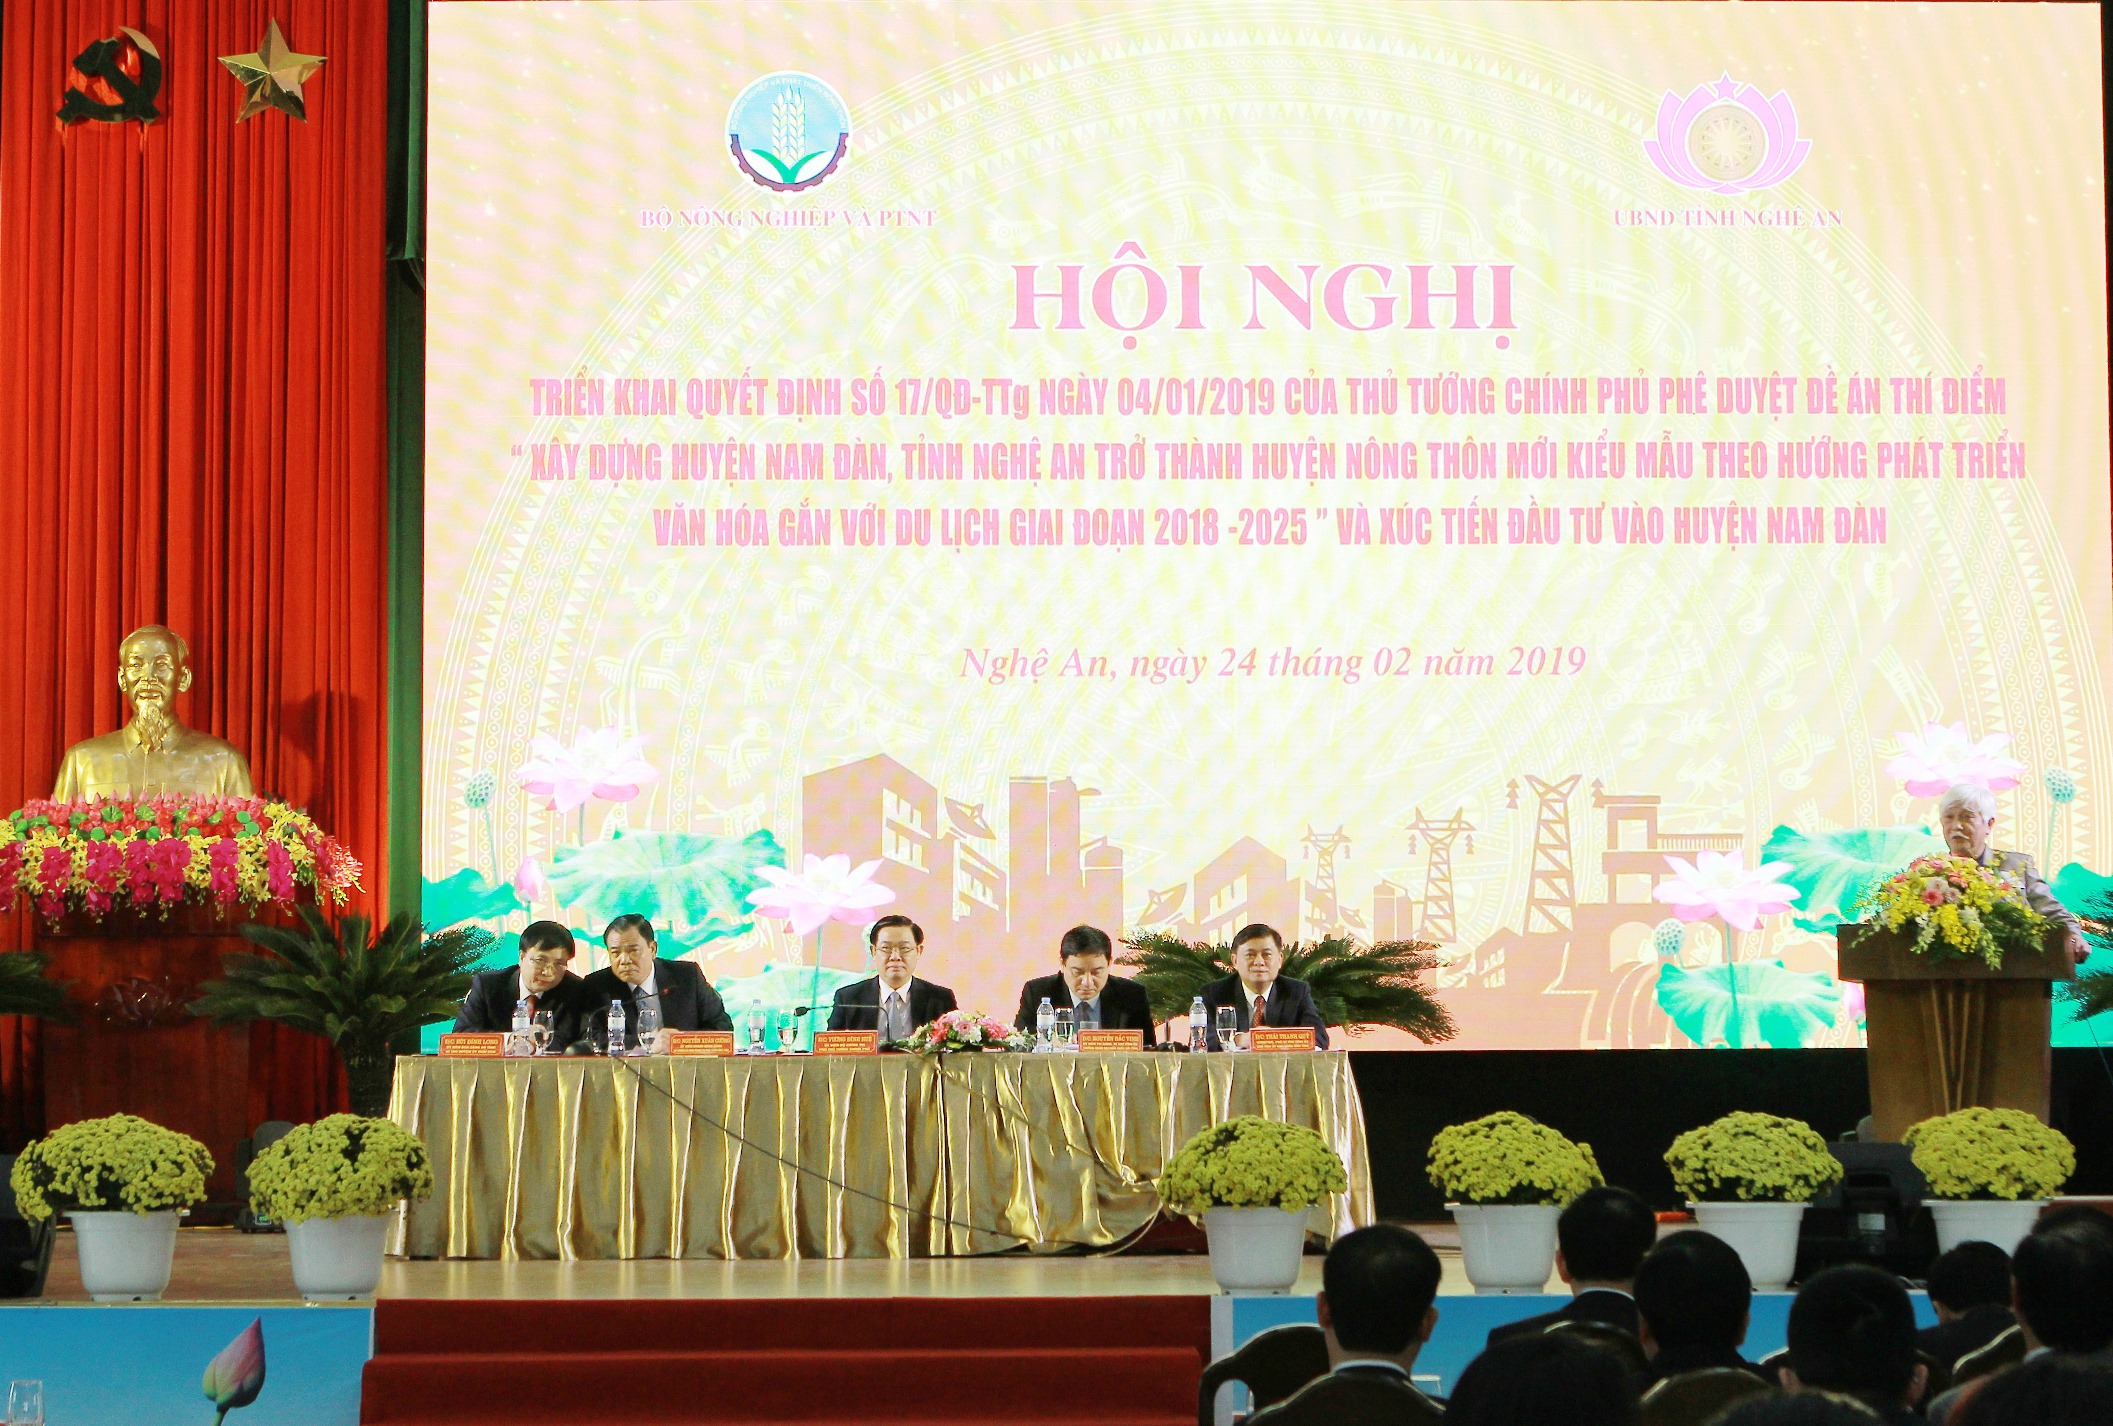 Kinh doanh - Vietcombank tài trợ 15 tỷ đồng xây dựng trường học tại huyện Nam Đàn, tỉnh Nghệ An